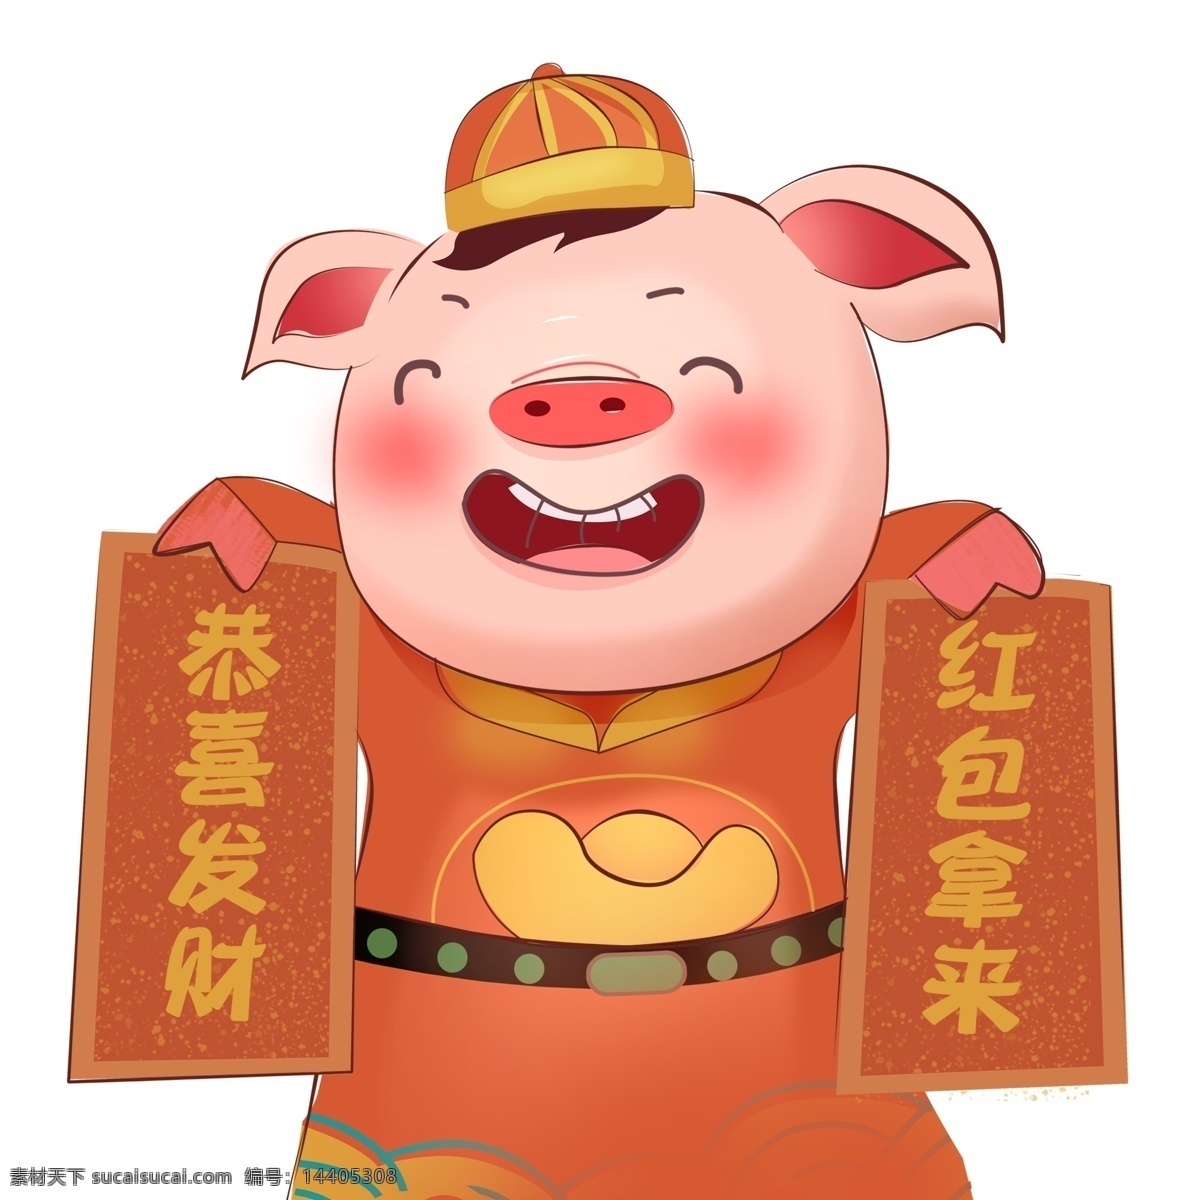 中国 风 对联 财神 猪 猪年 形象设计 卡通 中国风 插画 春节 喜庆 春联 新年 恭喜发财 红包拿来 psd元素